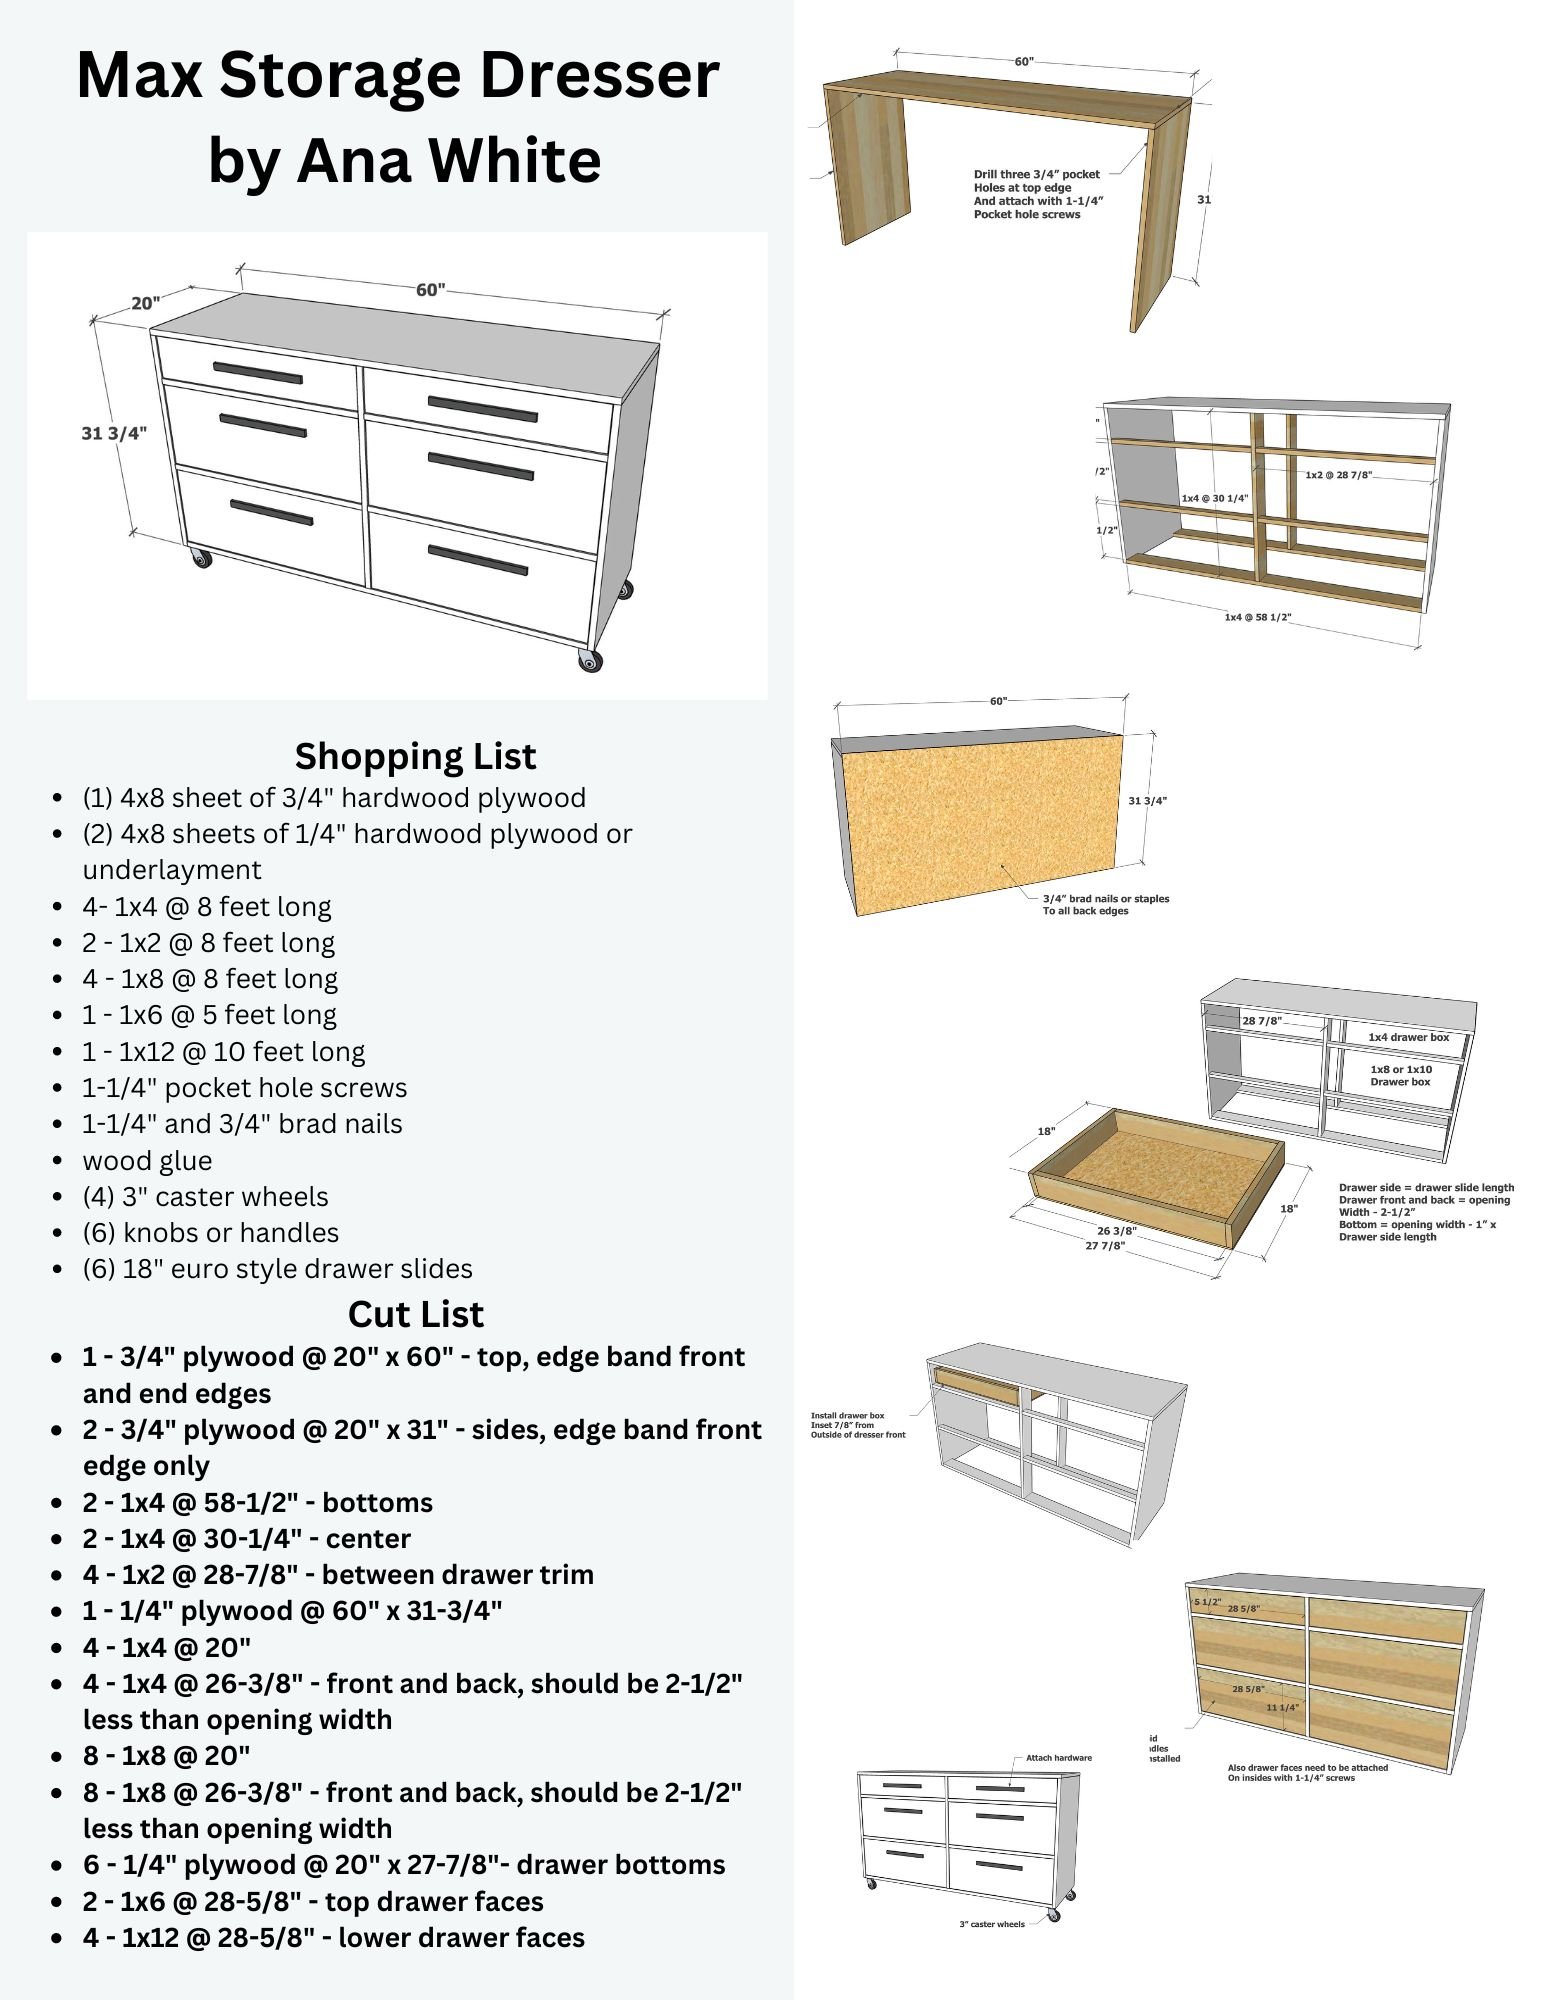 Max Storage Dresser - Easy to Modify Size Plans